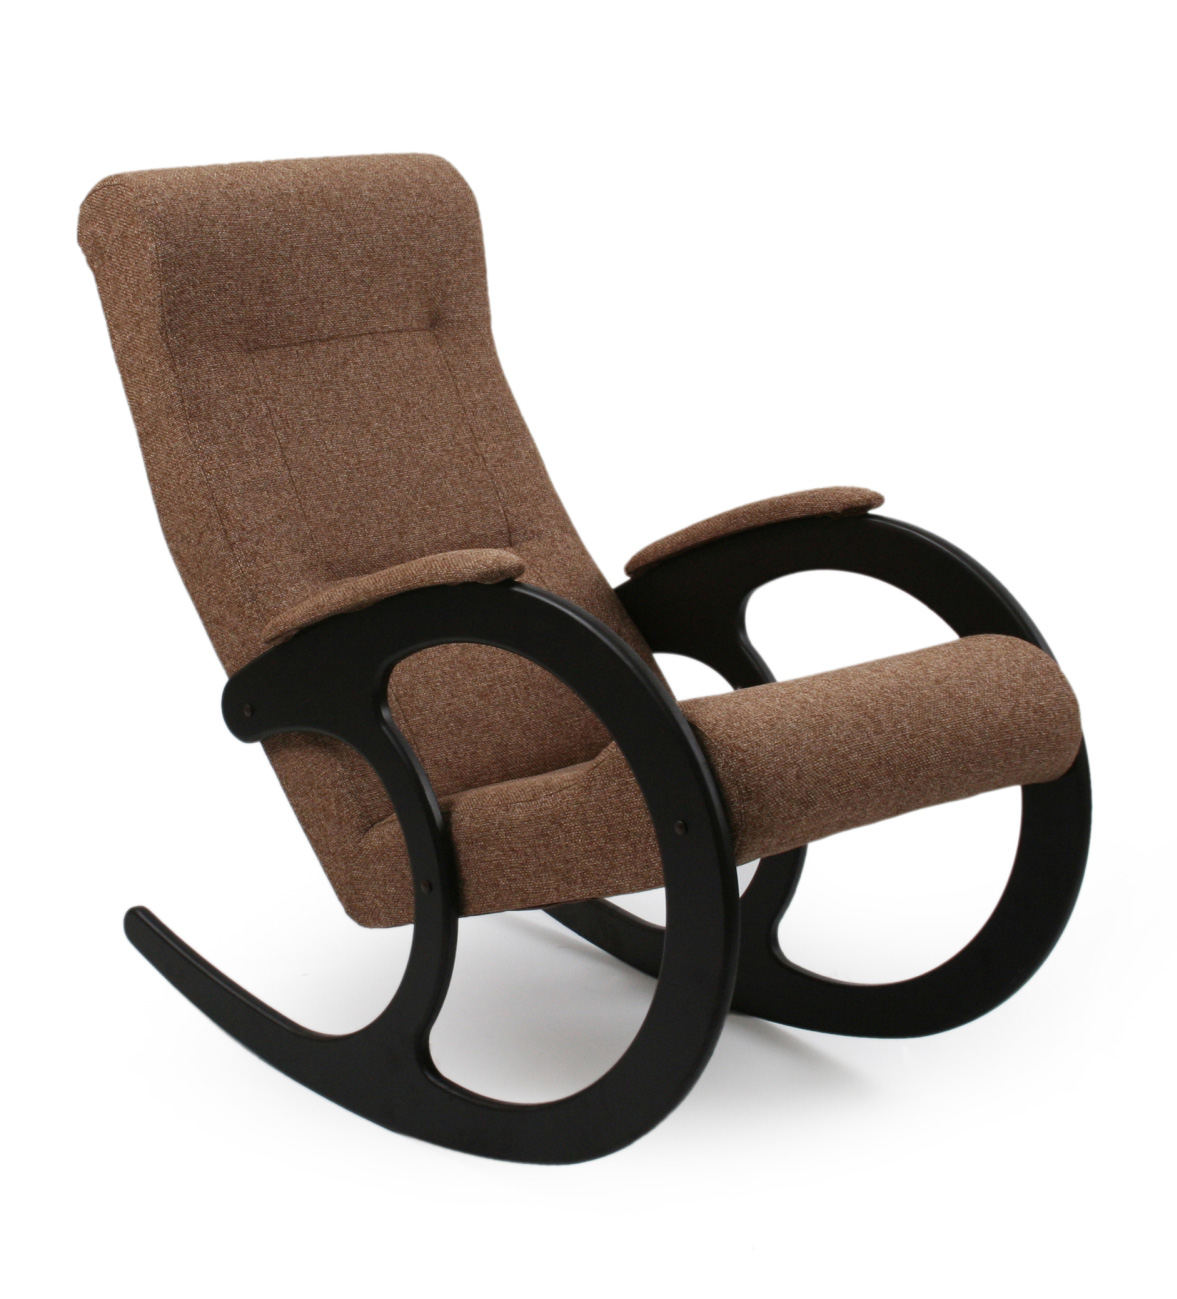 Недорогие кресла качалки от производителя. Мебель Импэкс кресло качалка. Кресло-качалка венге meridian233. Mebel Impex кресло качалка. Fancy 37 кресло качалка Импекс.